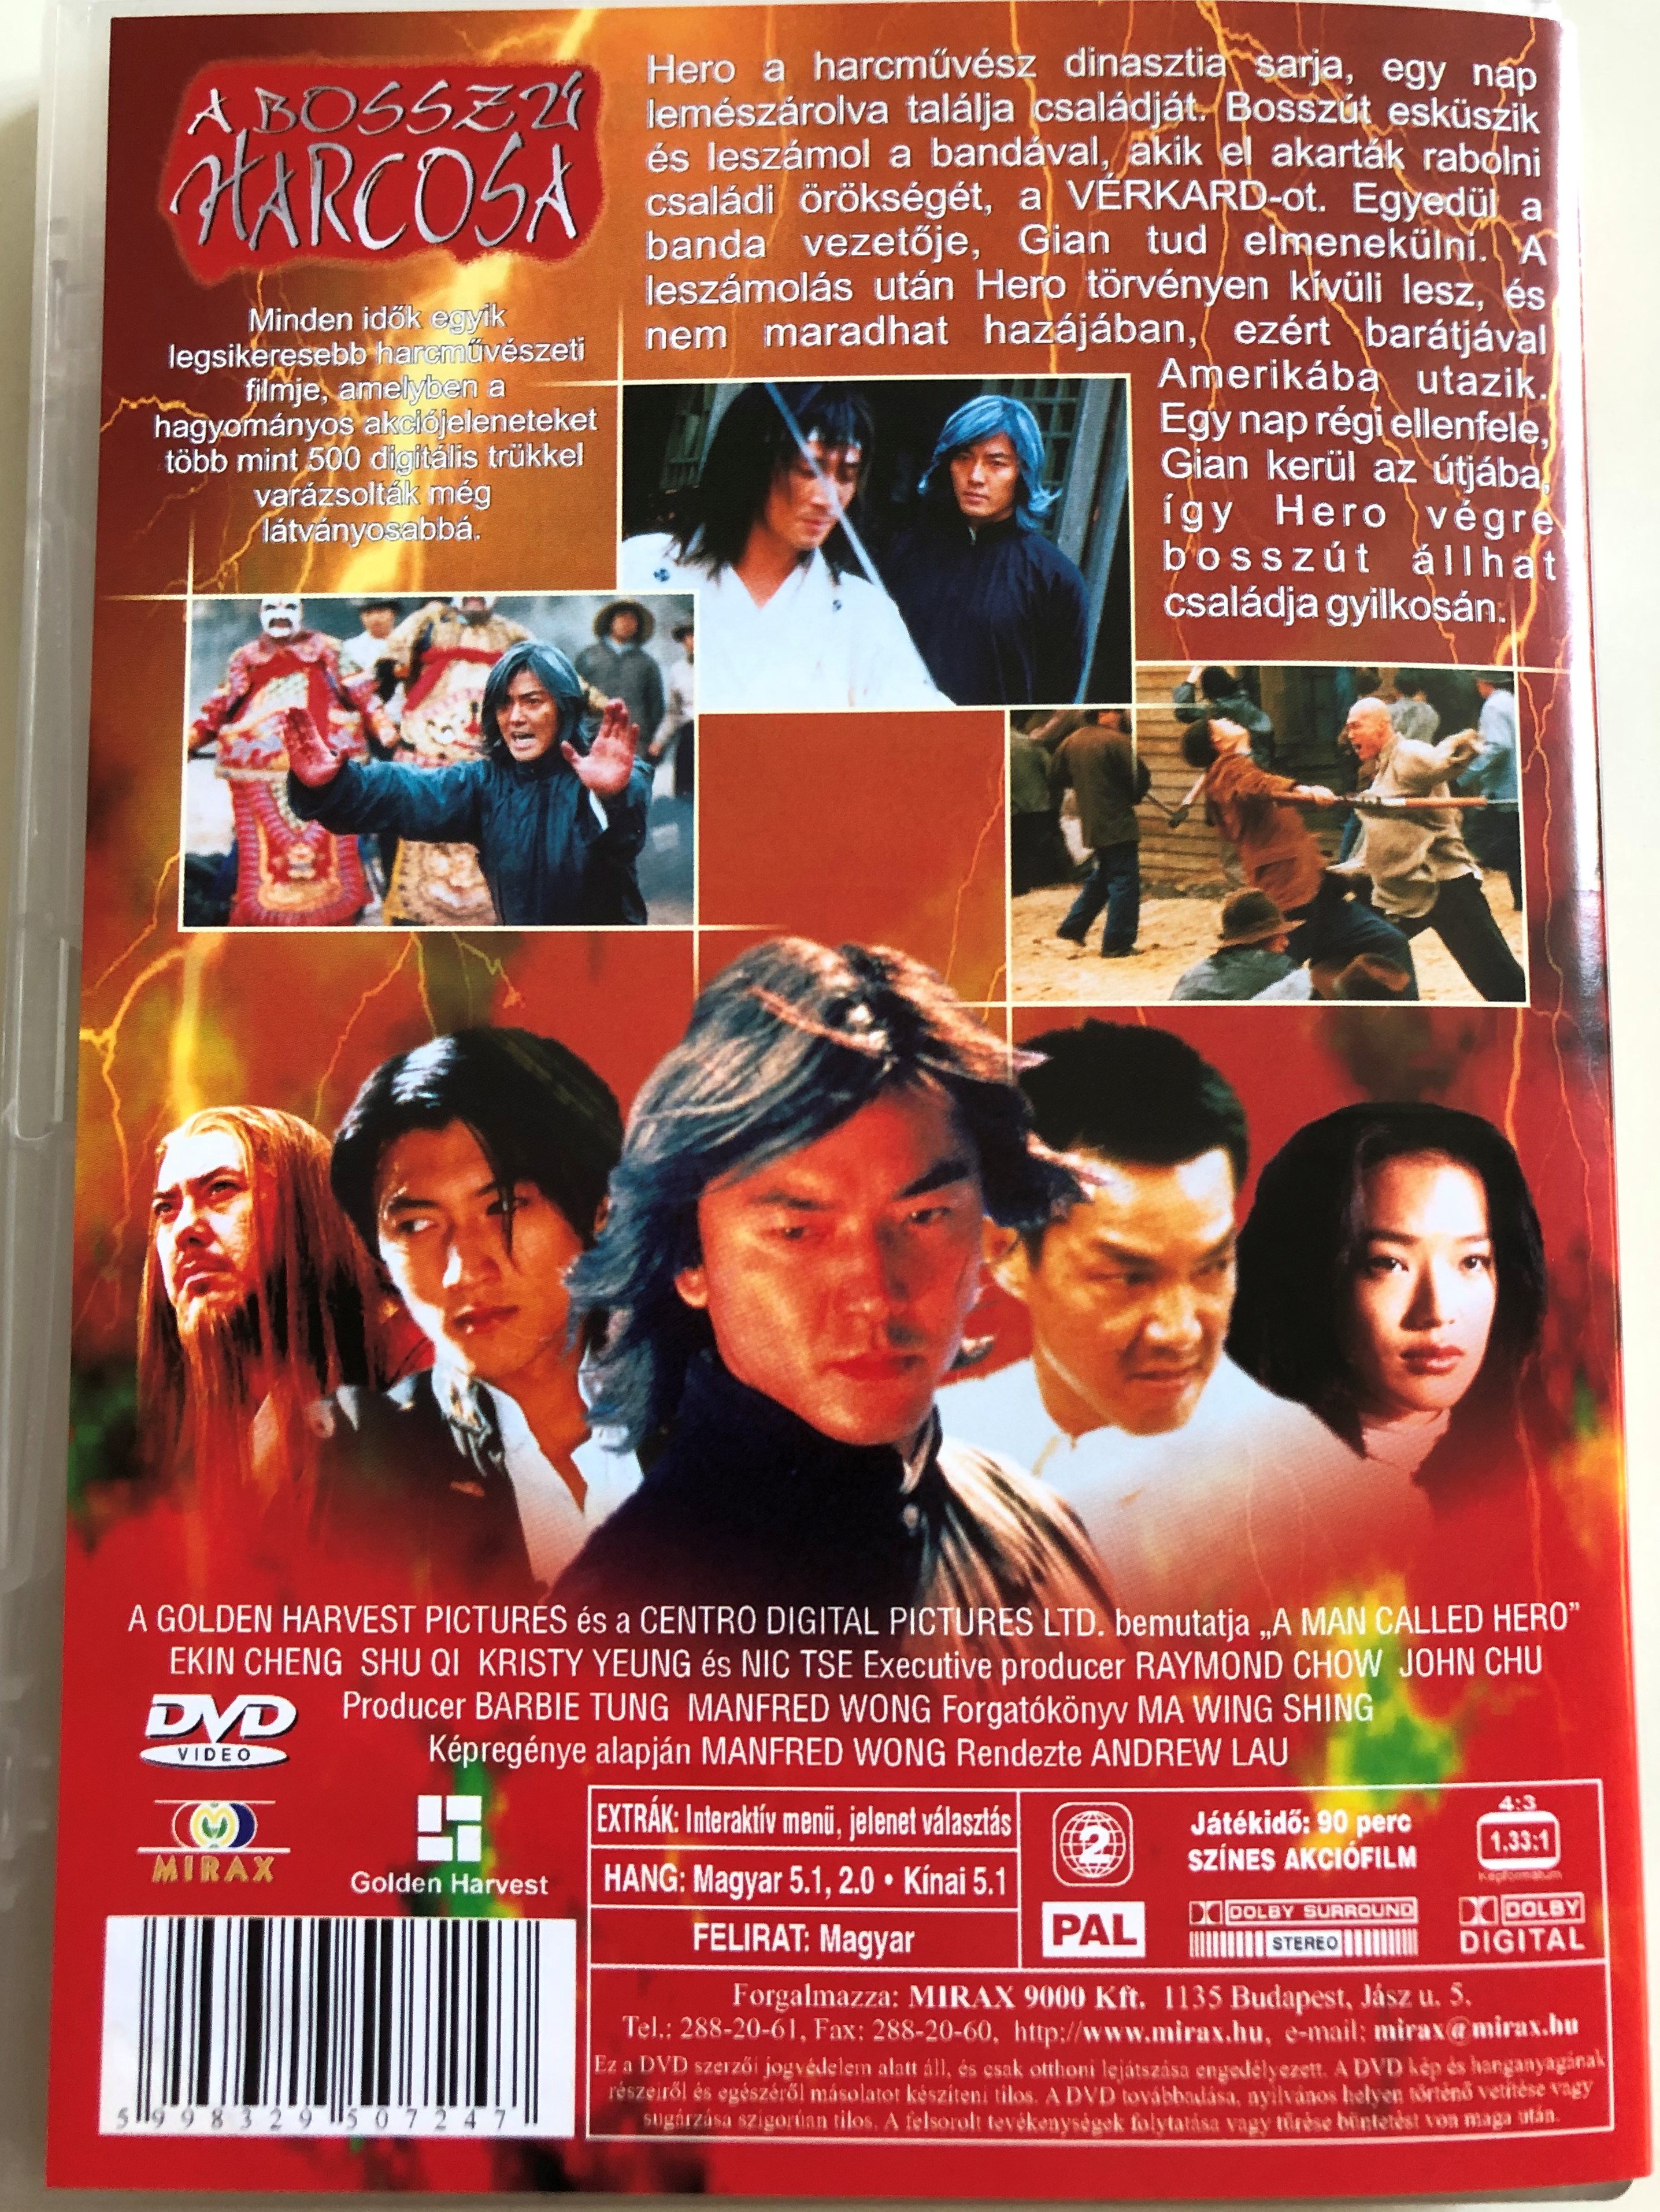 a-man-called-hero-dvd-1999-a-bossz-harcosa-directed-by-andrew-lau-starring-ekin-cheng-shu-qi-kristy-yang-nicholas-tse-yuen-biao-zung-waa-jing-hung-2-.jpg